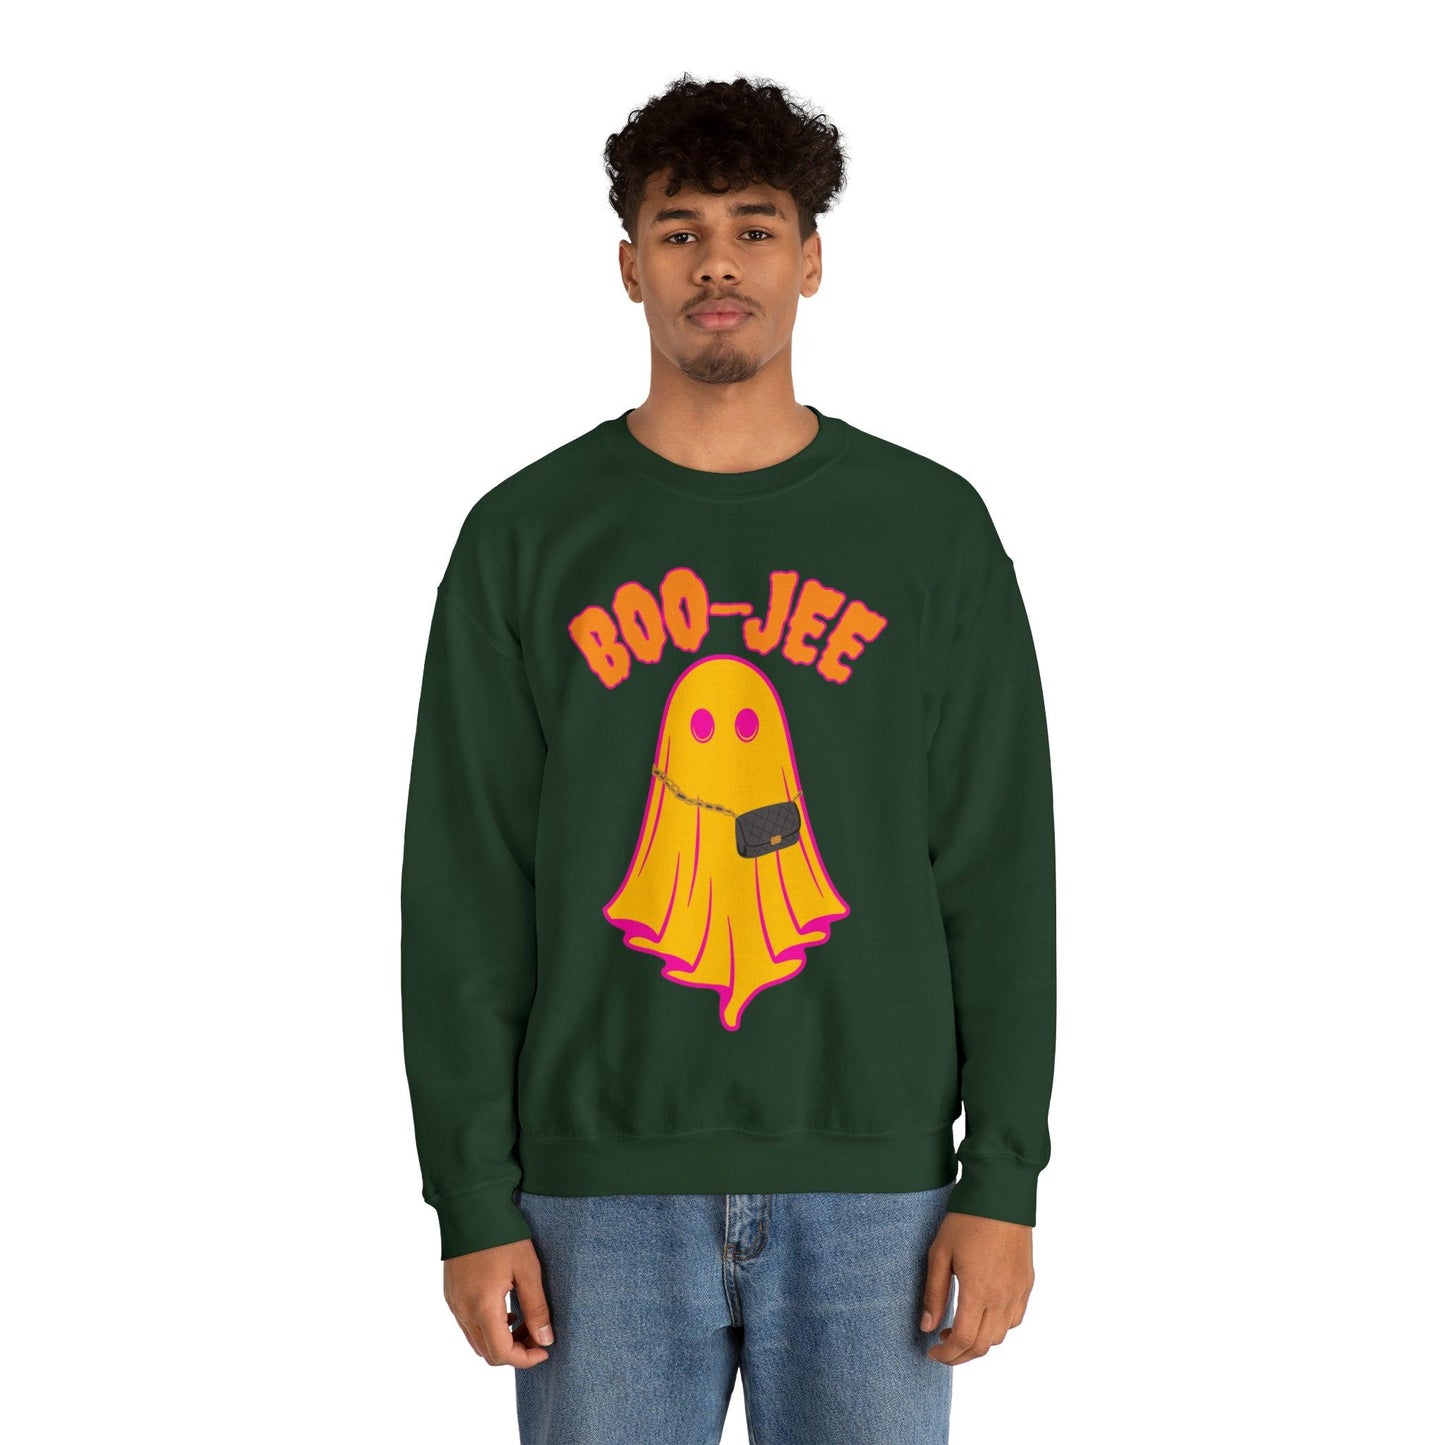 Boo-Jee Sweatshirt, Boo Halloween Sweatshirt, Spooky Ghost Sweatshirt, Boo Jee Shirt, Halloween Ghost Sweatshirt, Halloween Boo Shirt - Giftsmojo